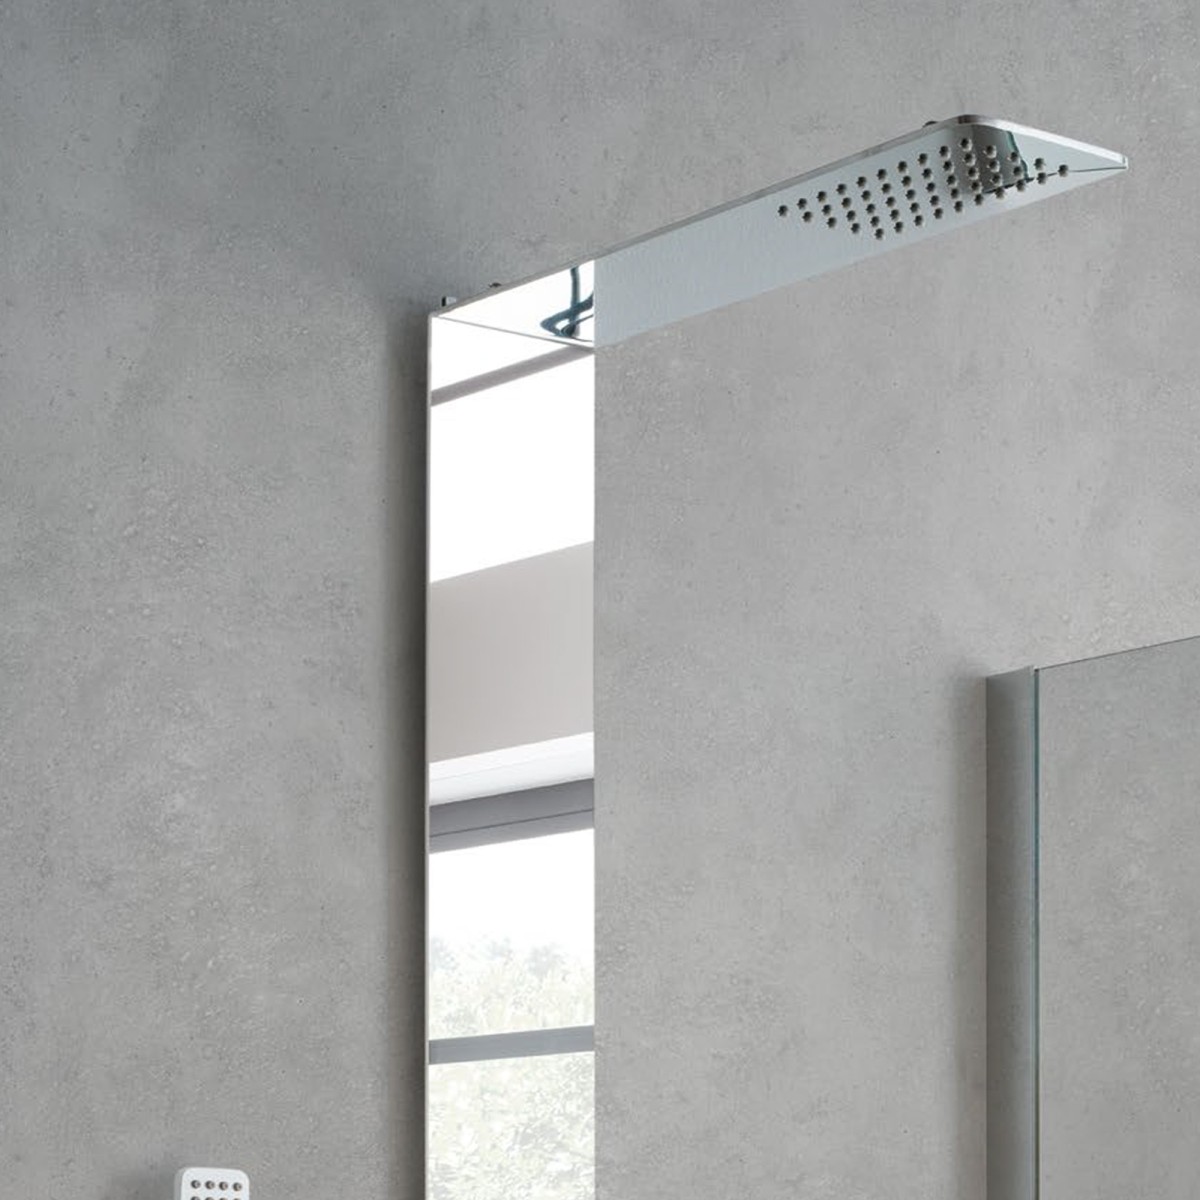 Colonna doccia PIEMONTE in acciaio inox effetto specchio silver con mensola